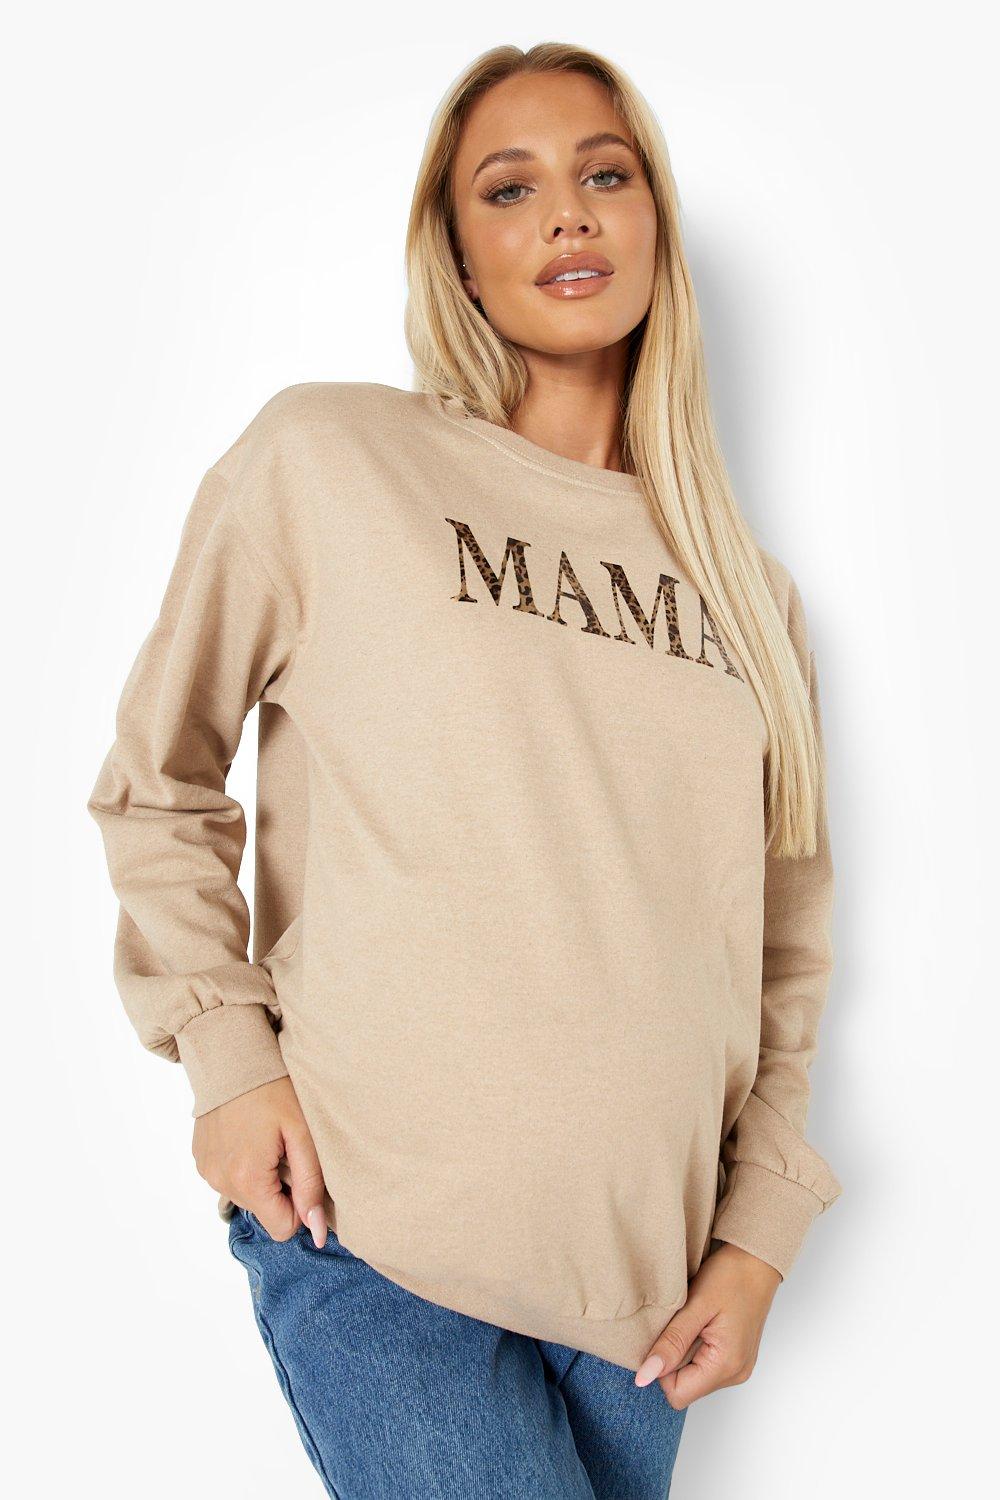 Mammakläder - Mama Sweatshirt Med Slogan Och Leopardmönster, Beige